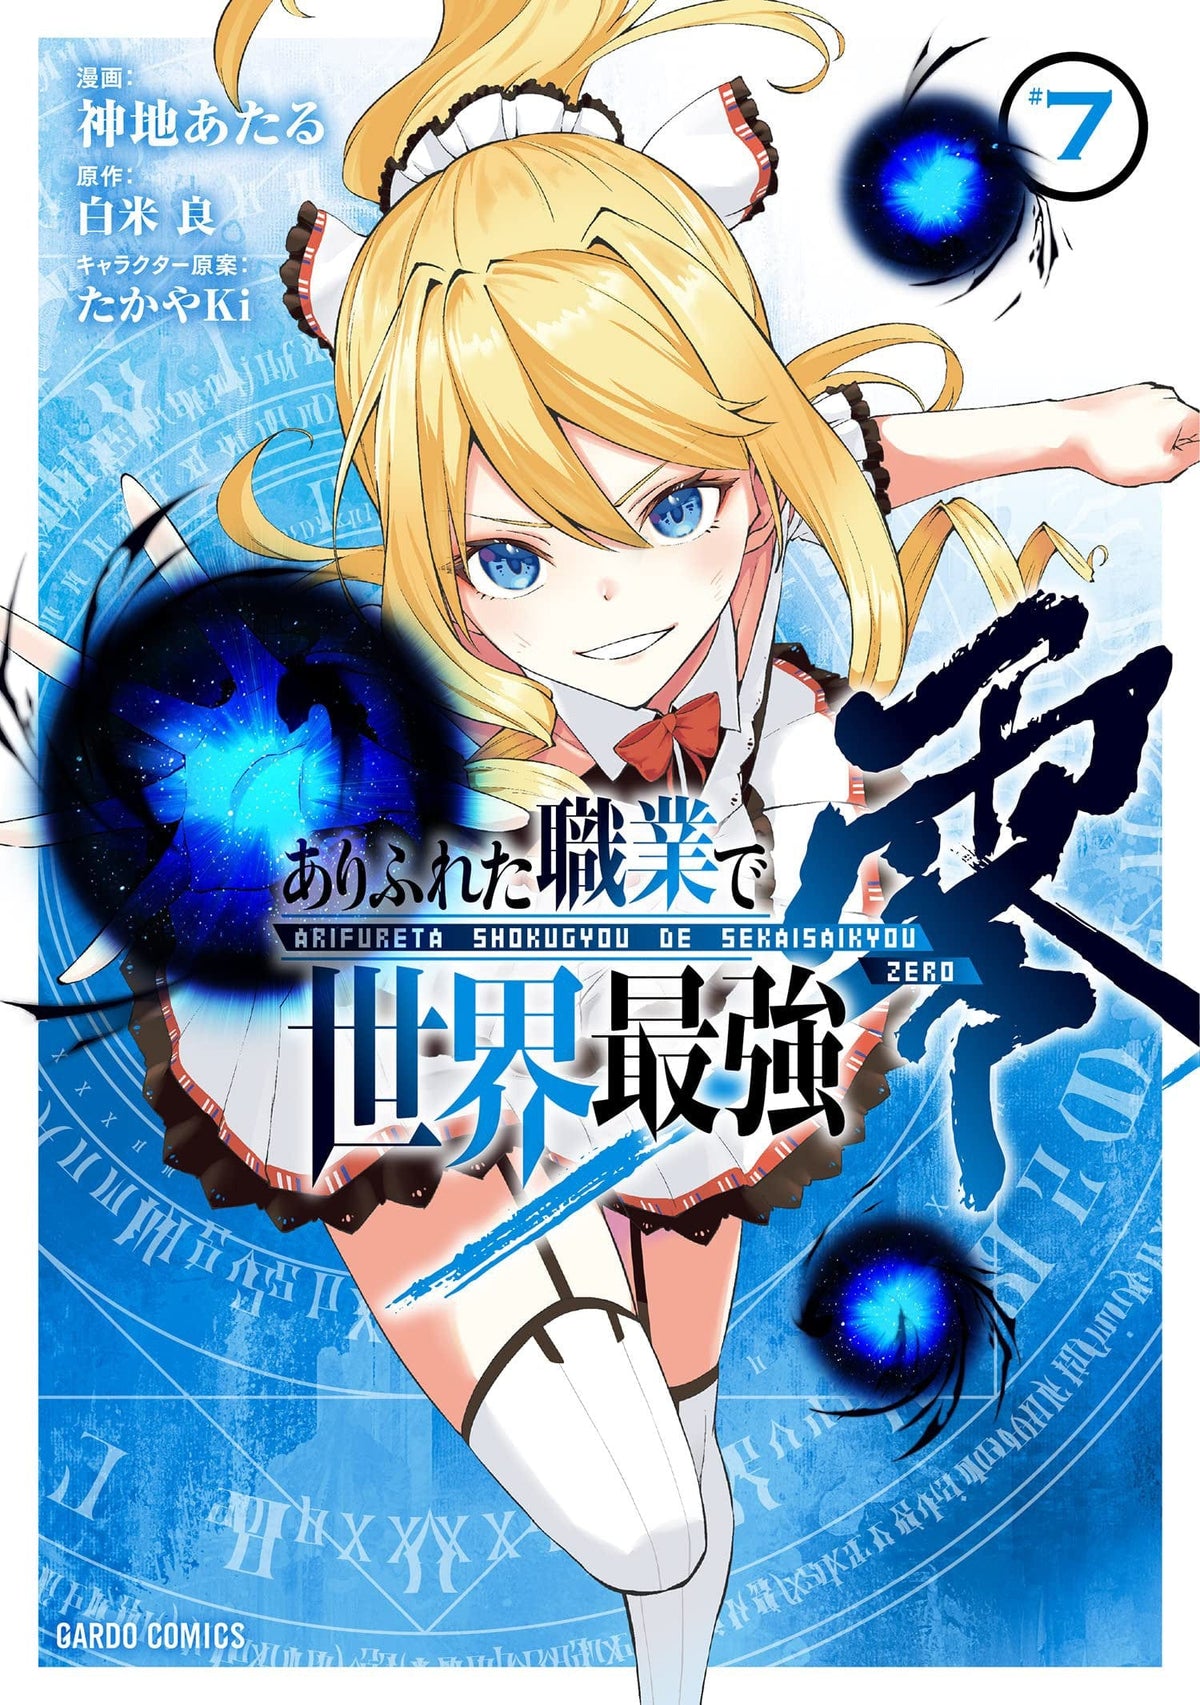 Berserk of Gluttony (Manga) Vol. 3 by Isshiki Ichika: 9781648272714